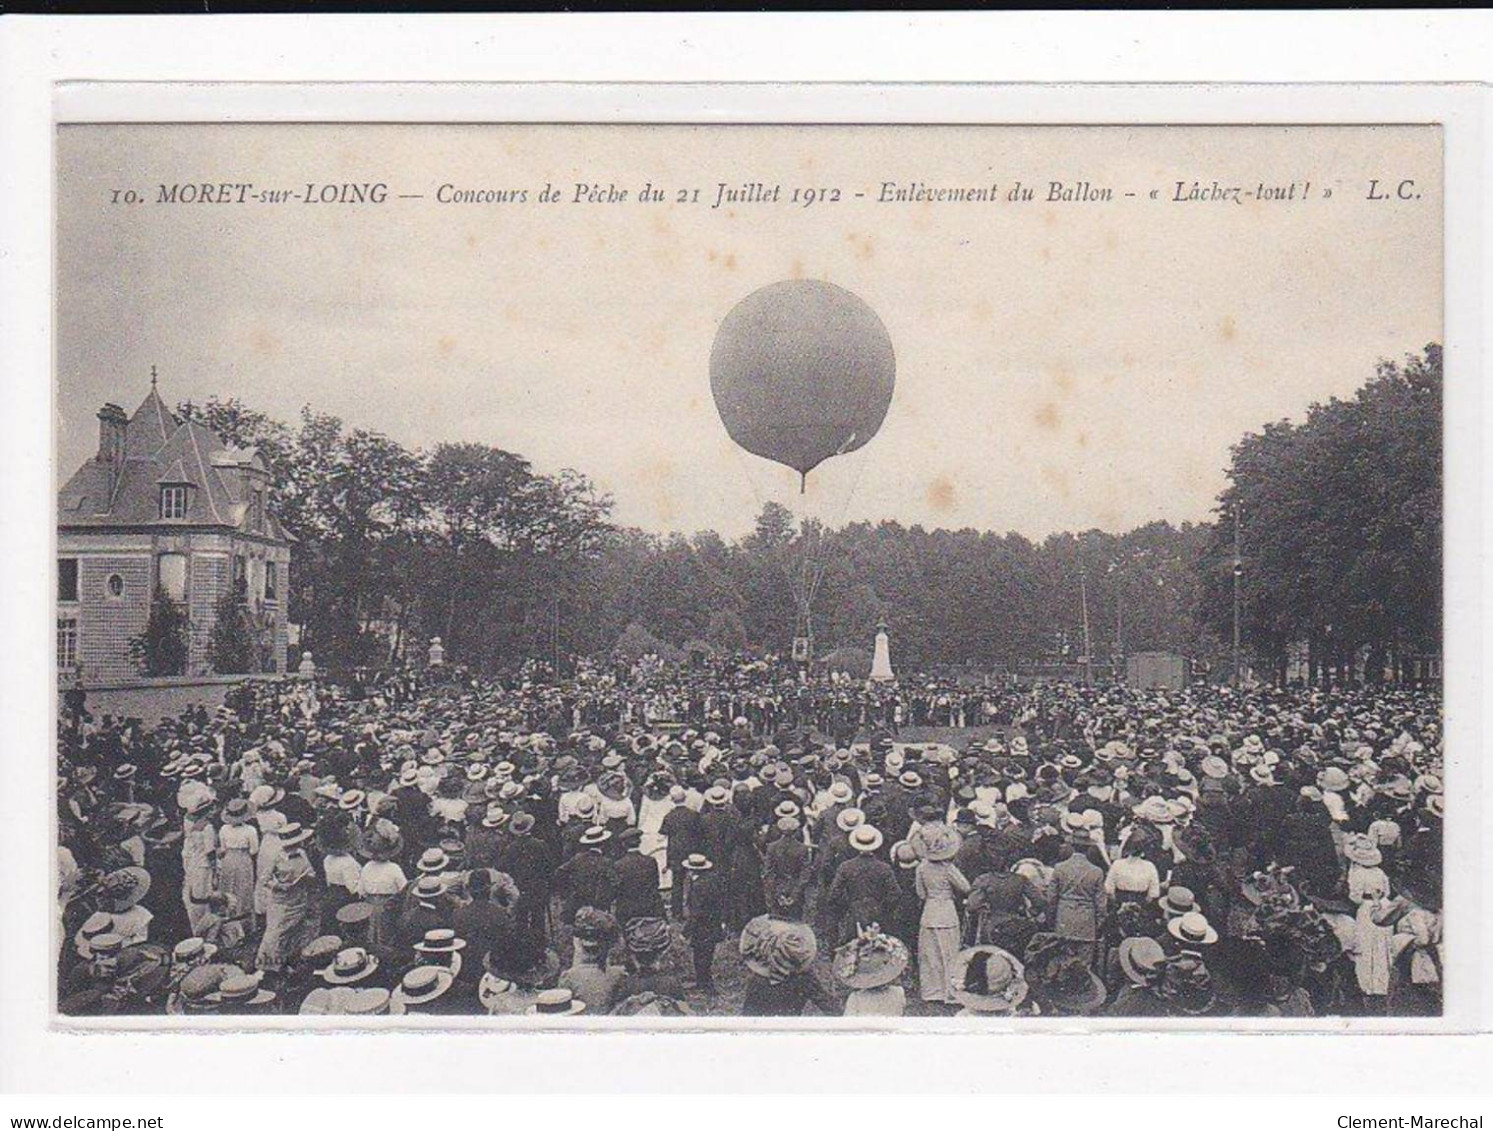 MORET-sur-LOING : Concours De Pêche Du 21 Juillet 1912, Enlèvement Du Ballon, "Lâchez-tout" - état - Moret Sur Loing